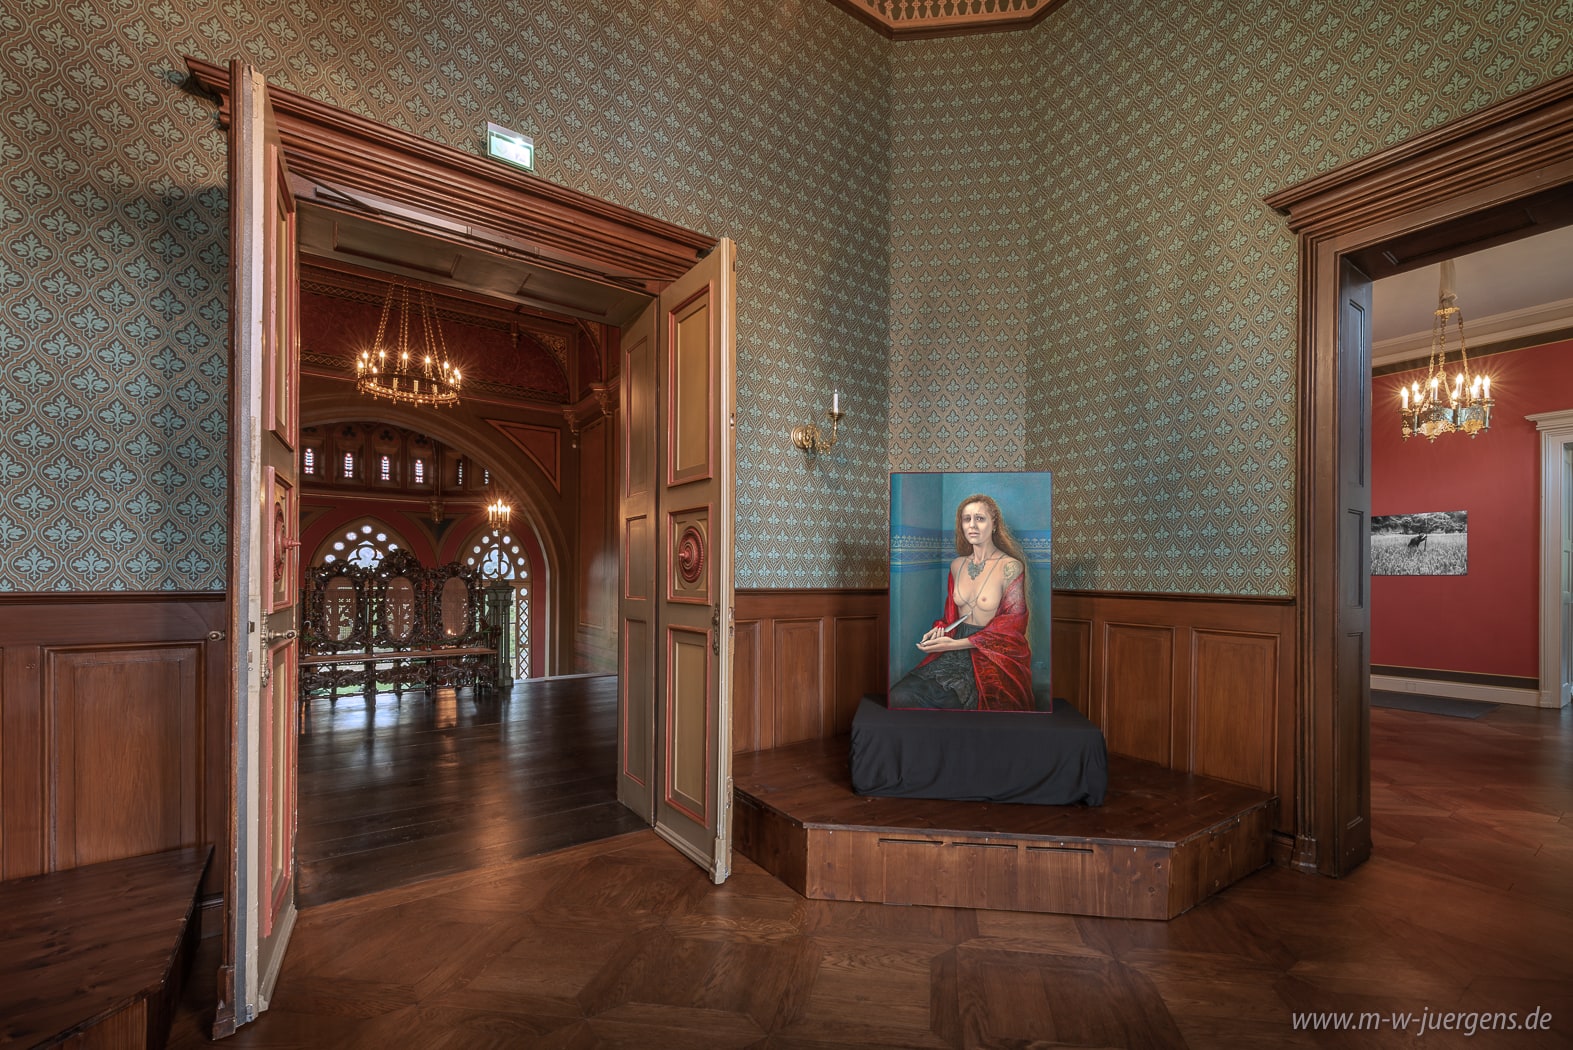 Castello Evenburg, Nuovo Realismo Arte, Da pari a pari, Manfred W. Jürgens, Katharina John, Fotografia